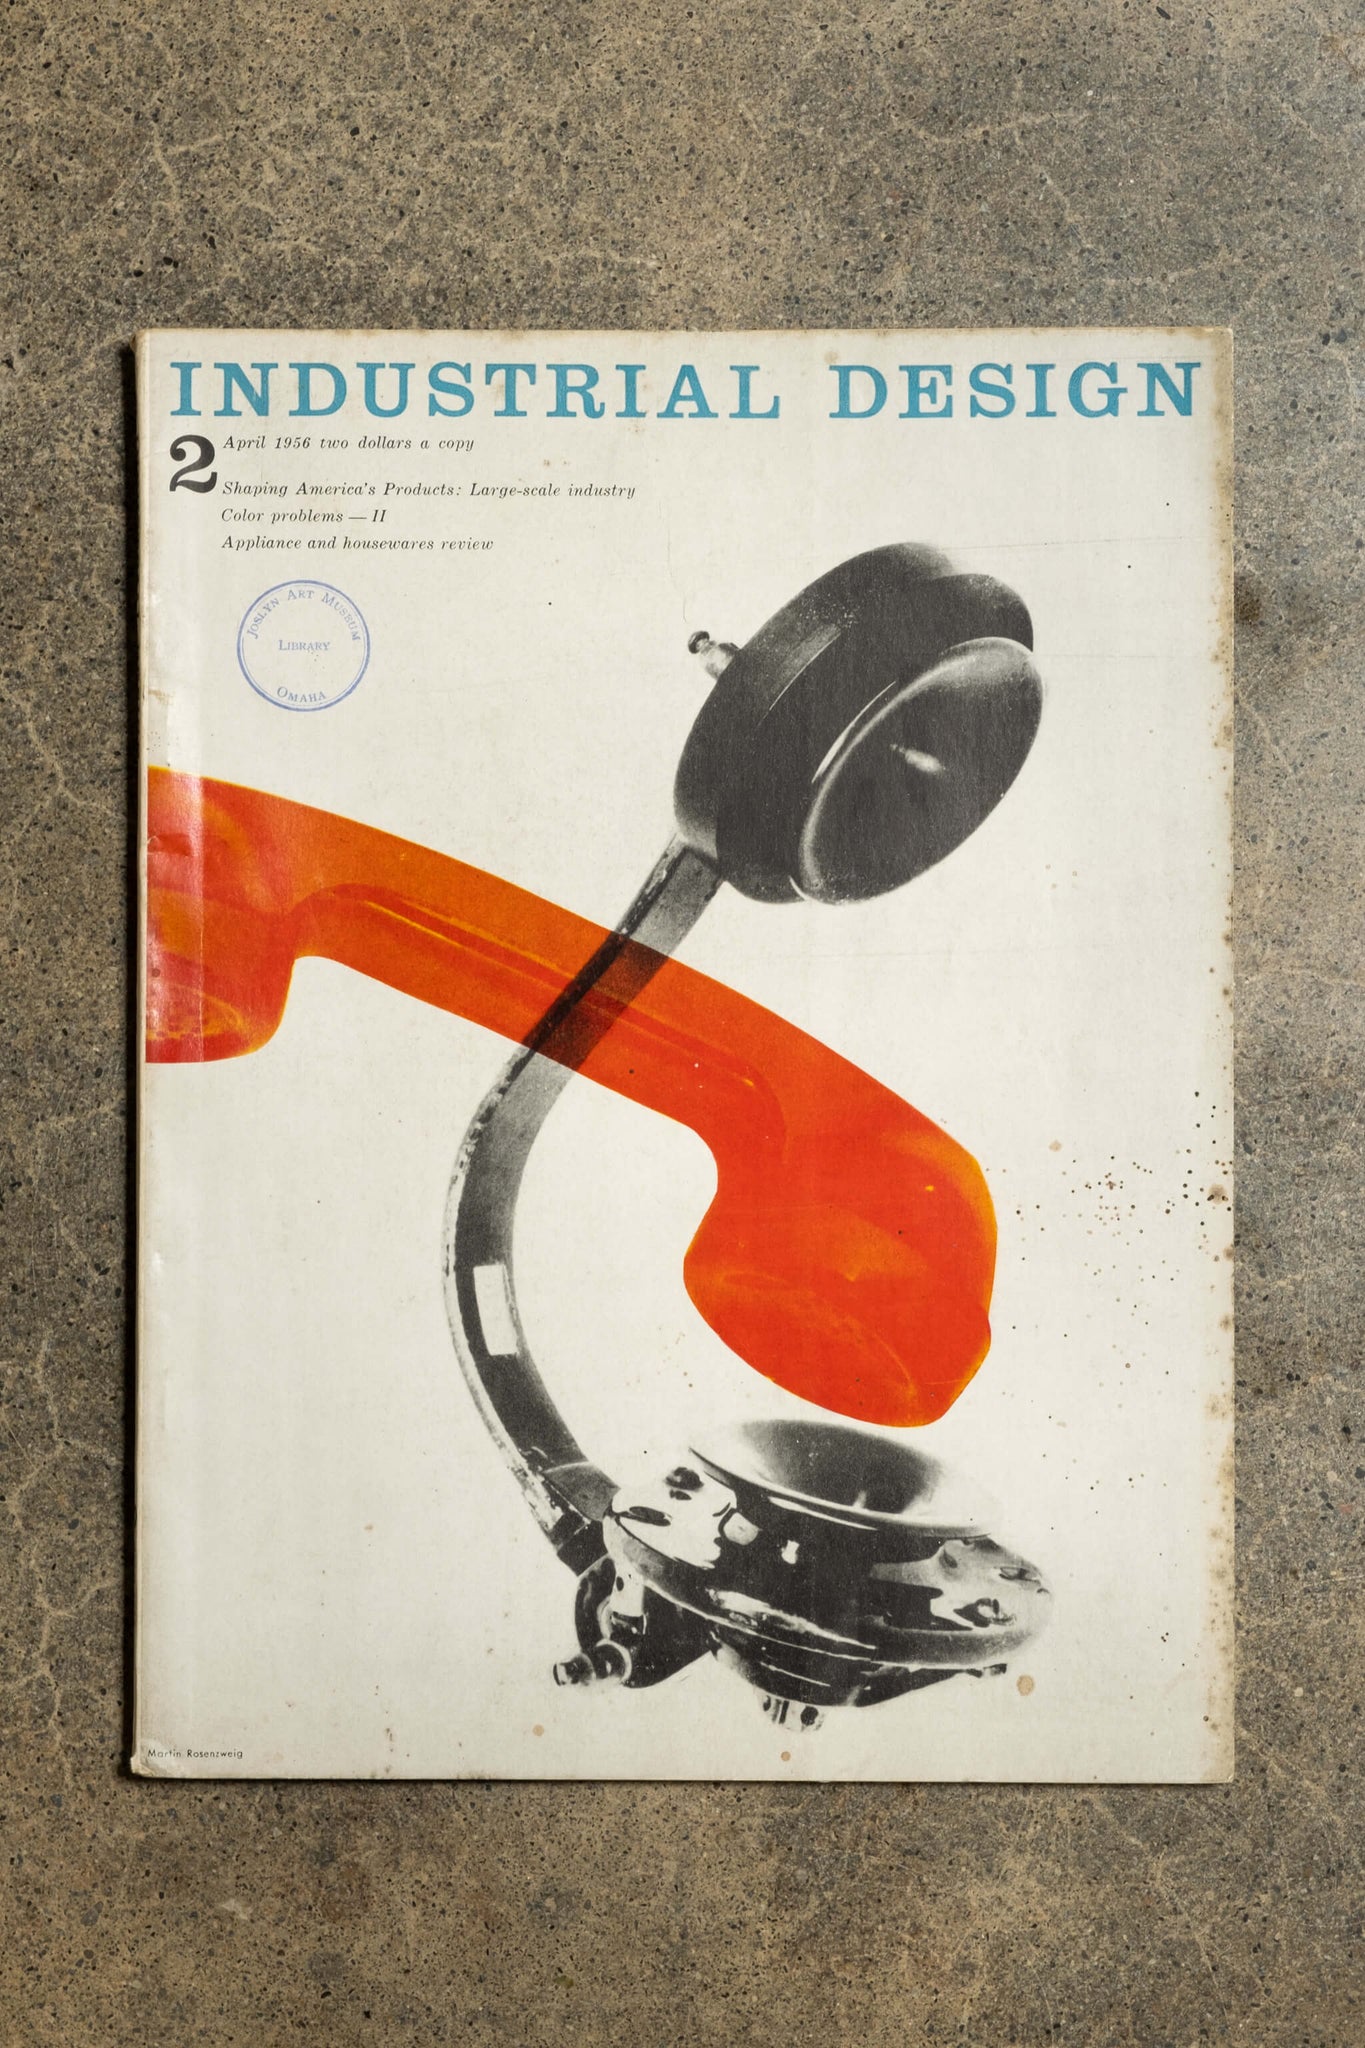 Industrial Design Vintage Magazine, April 1956